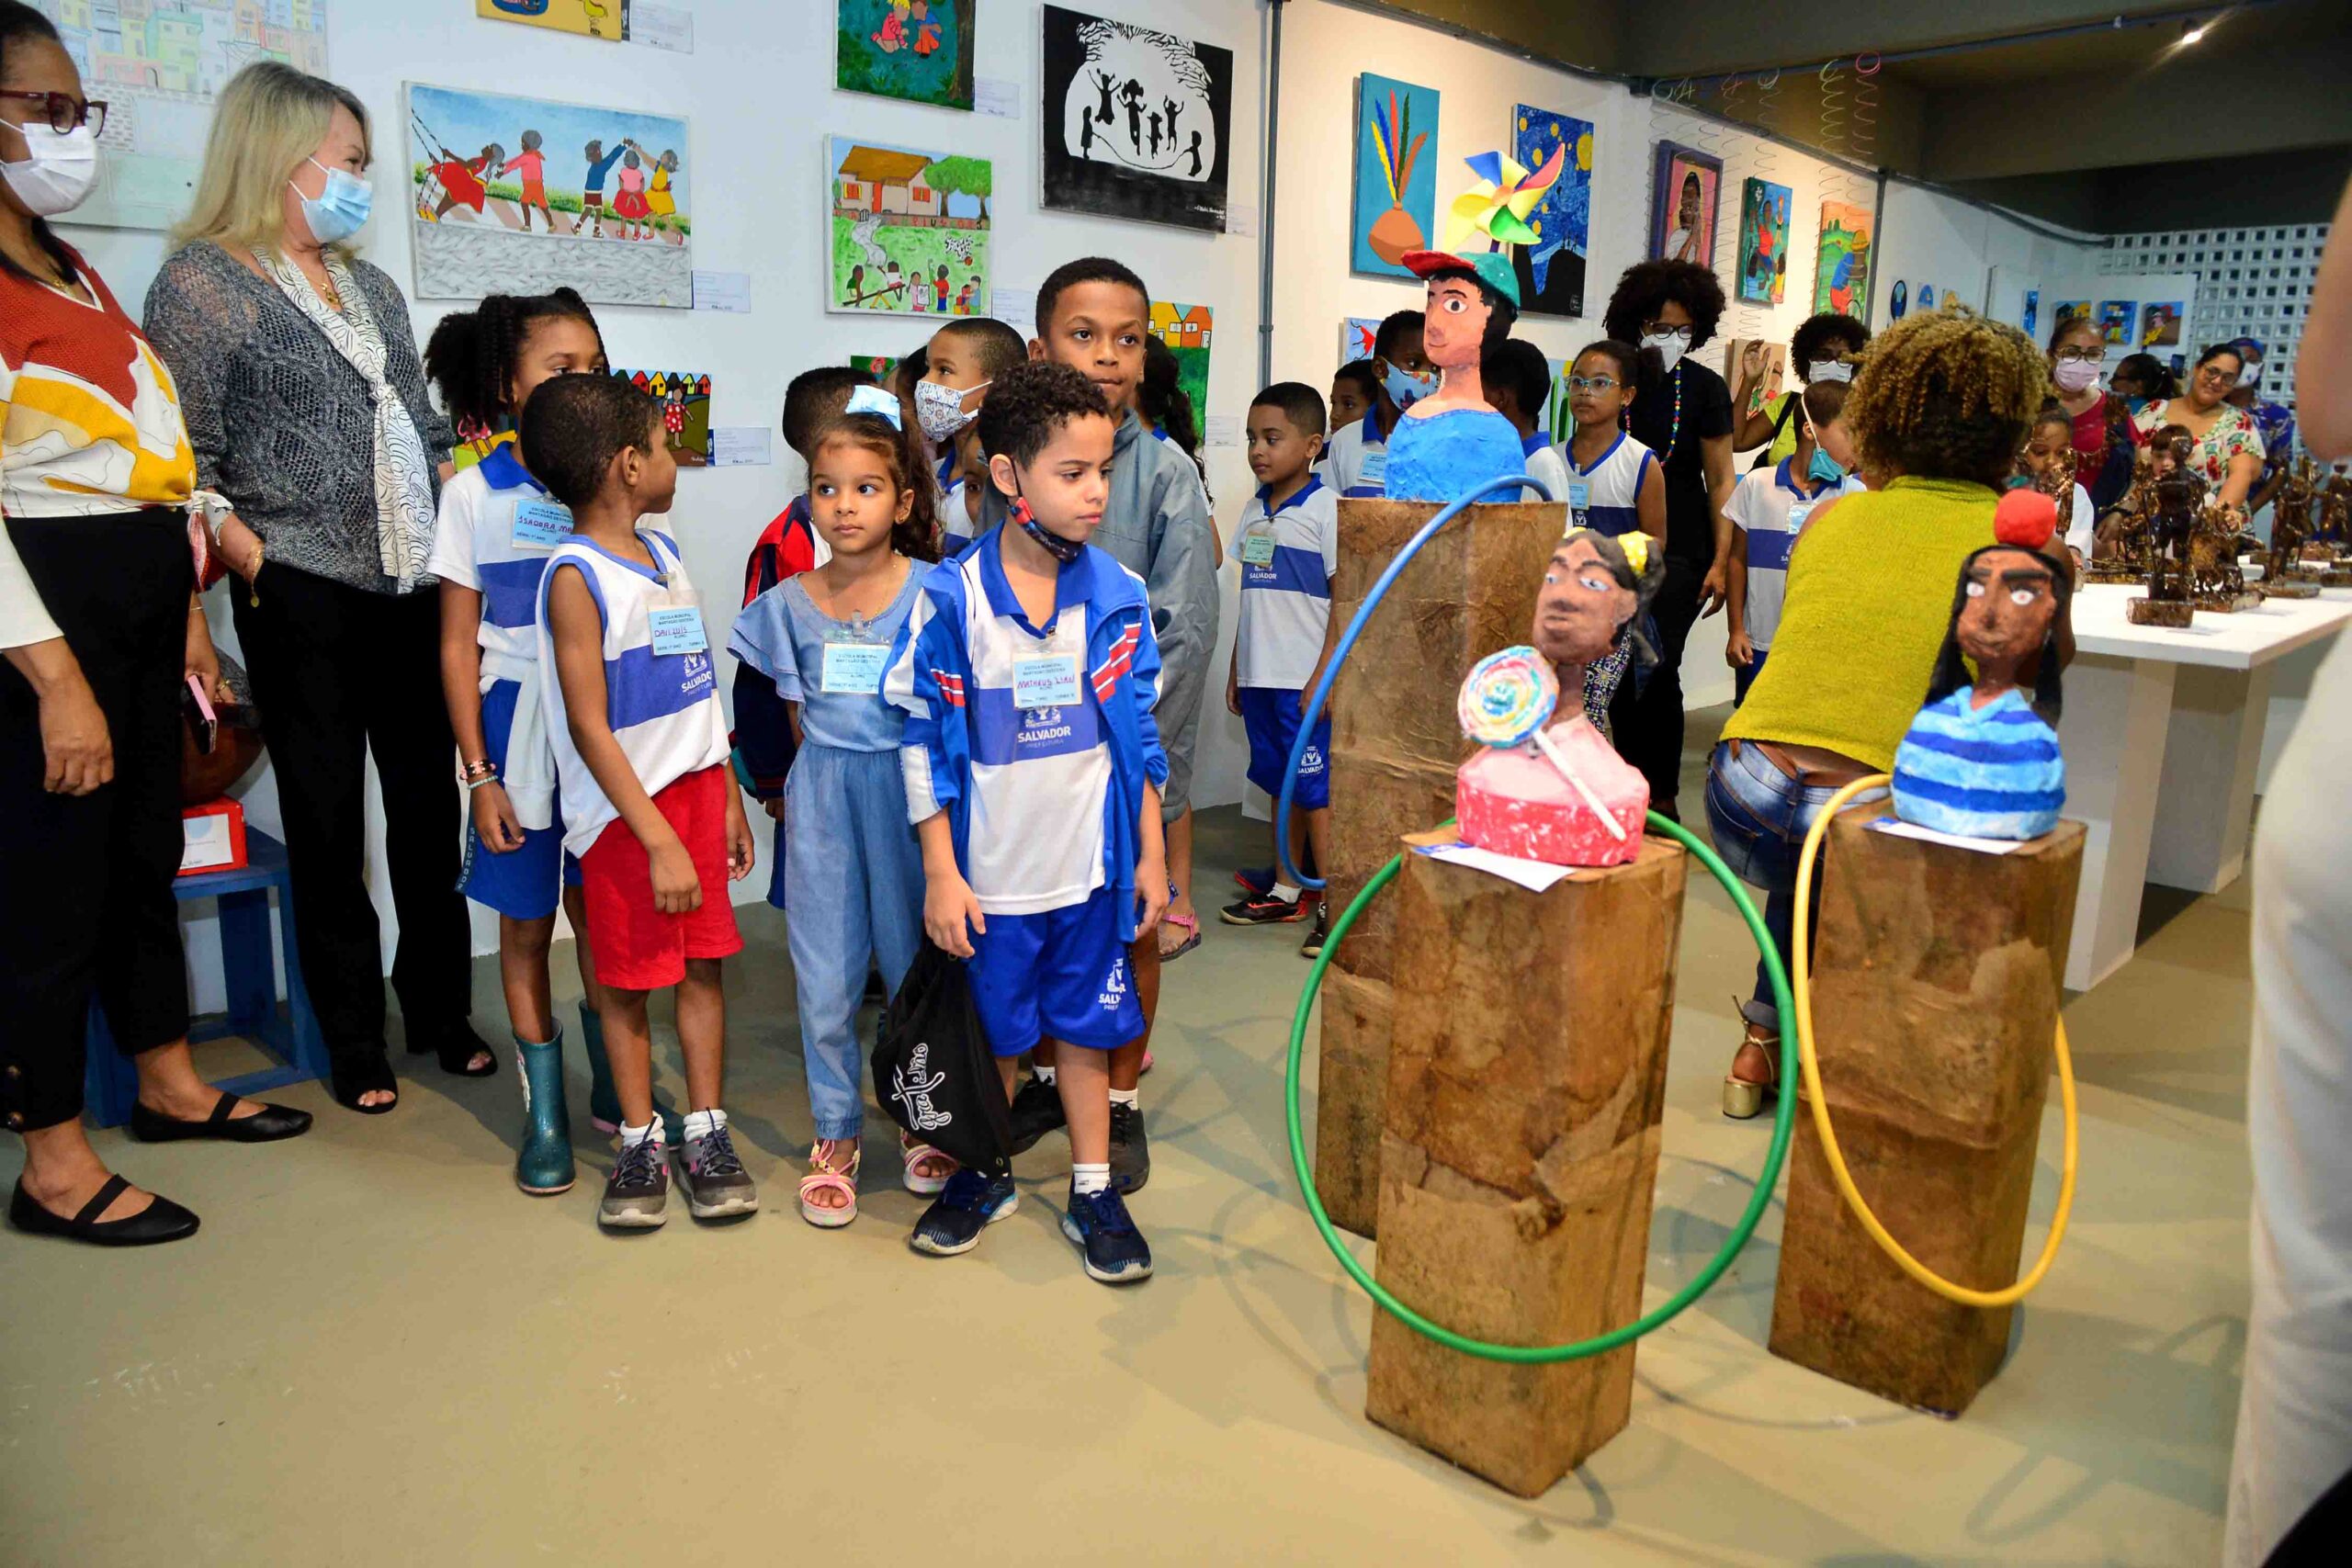 Galeria das Artes reúne peças produzidas por alunos da Fundação Cidade-Mãe